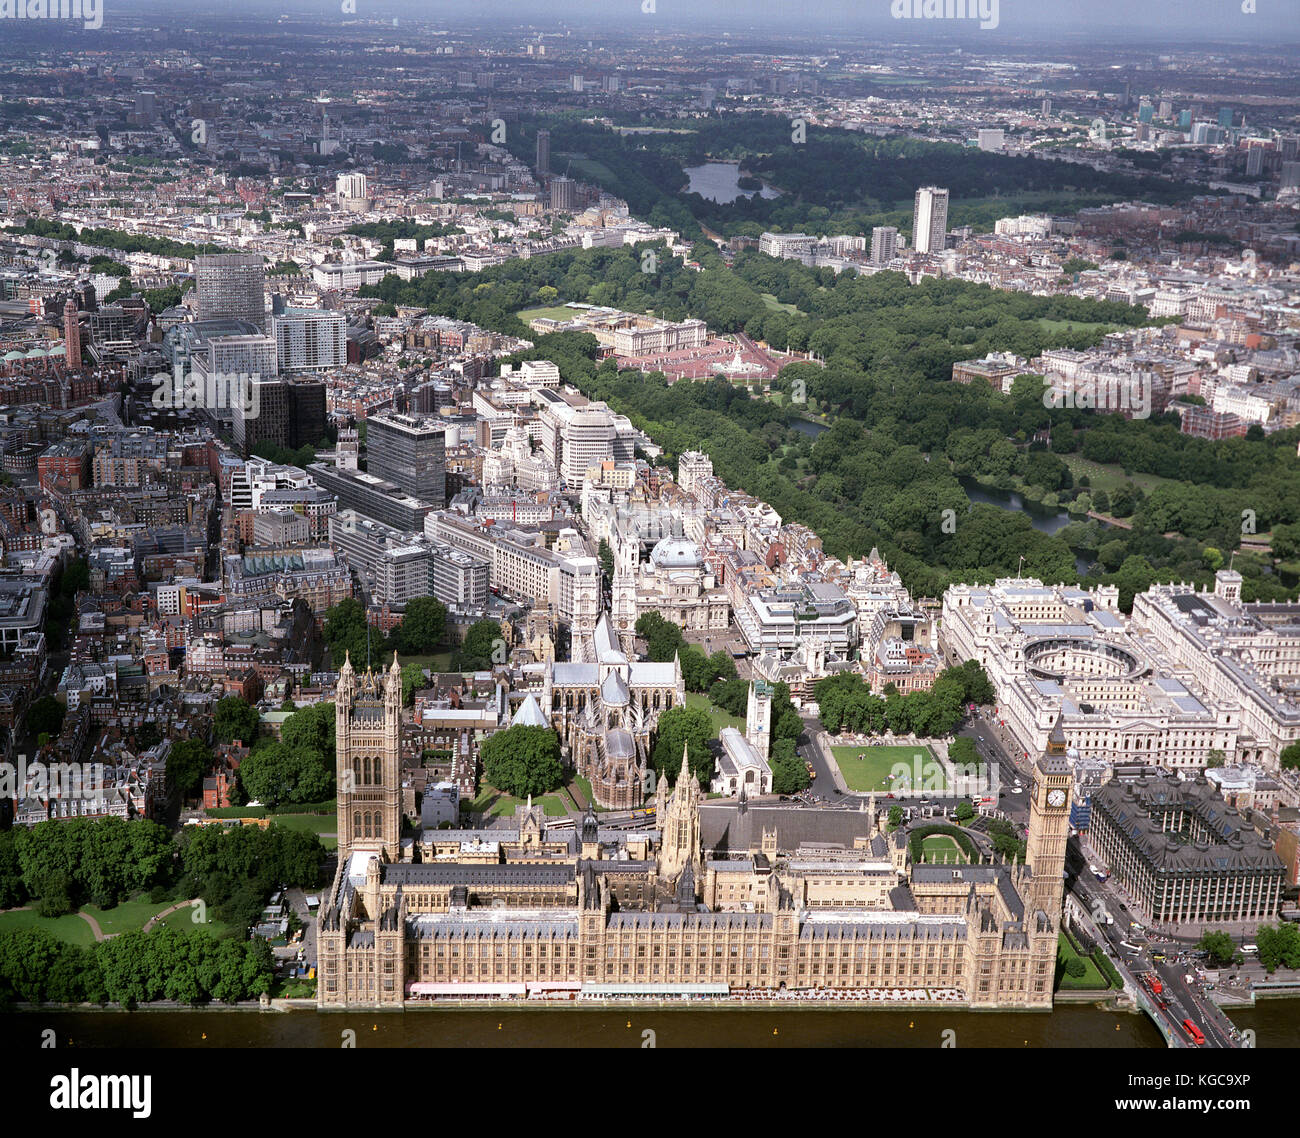 Une vue aérienne de Londres montrant les chambres du Parlement, l'abbaye de Westminster, Buckingham Palace, la place du Parlement, Big Ben, Green Park et St James Pa Banque D'Images